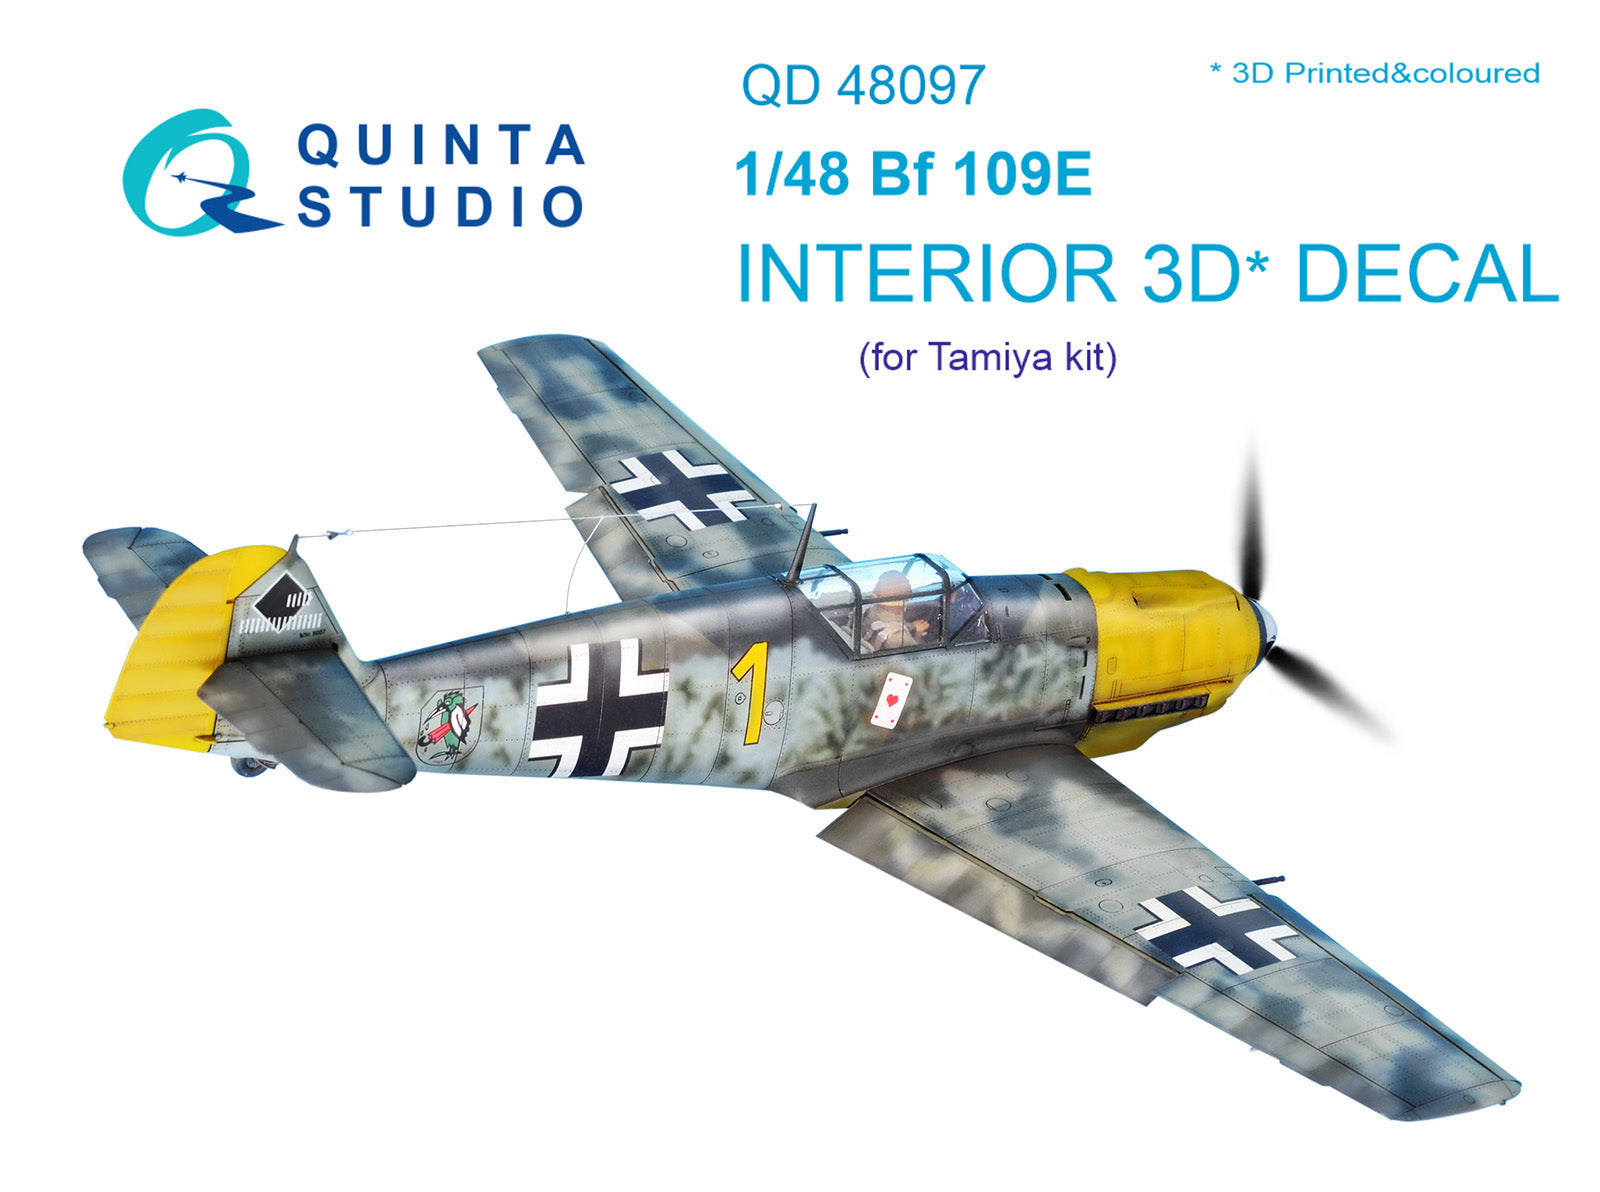 Quinta Studio - 1/48 Bf 109E - QD48097 for Tamiya kit